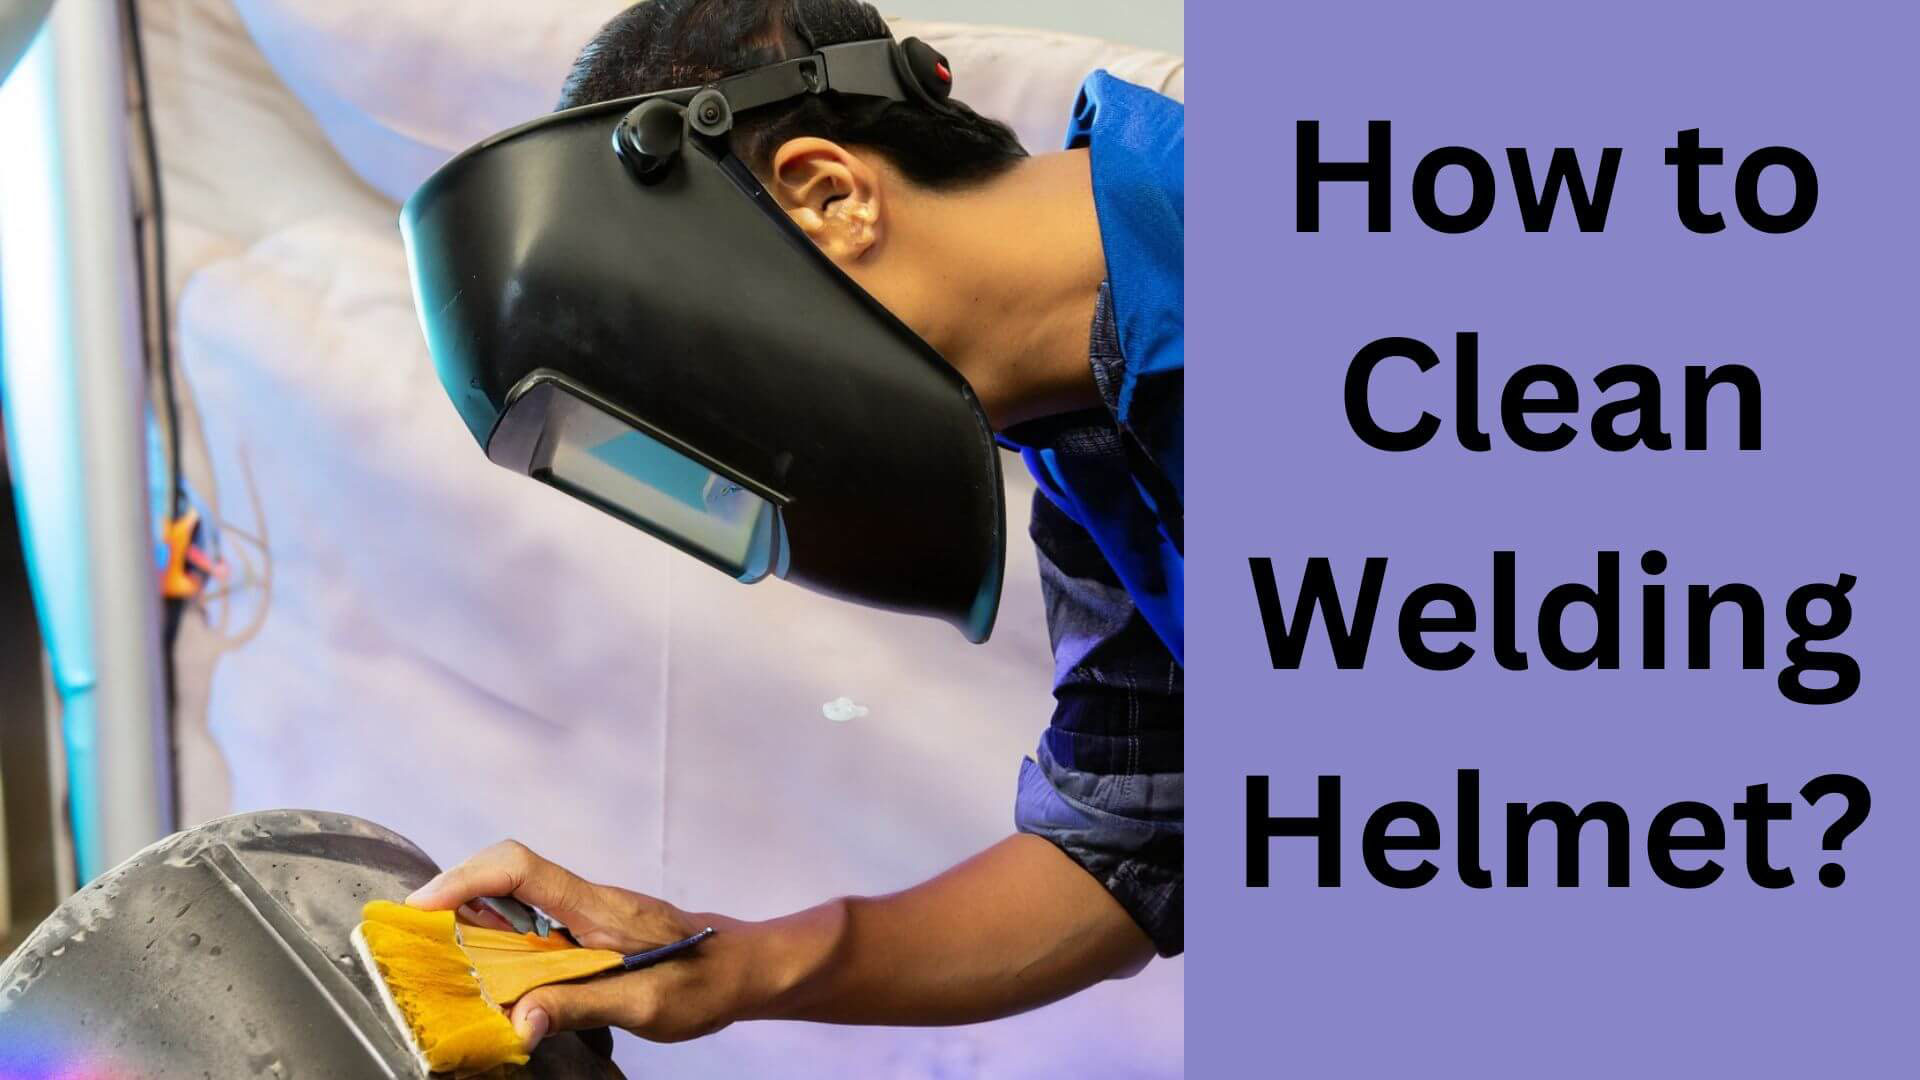 How to Clean Welding Helmet?